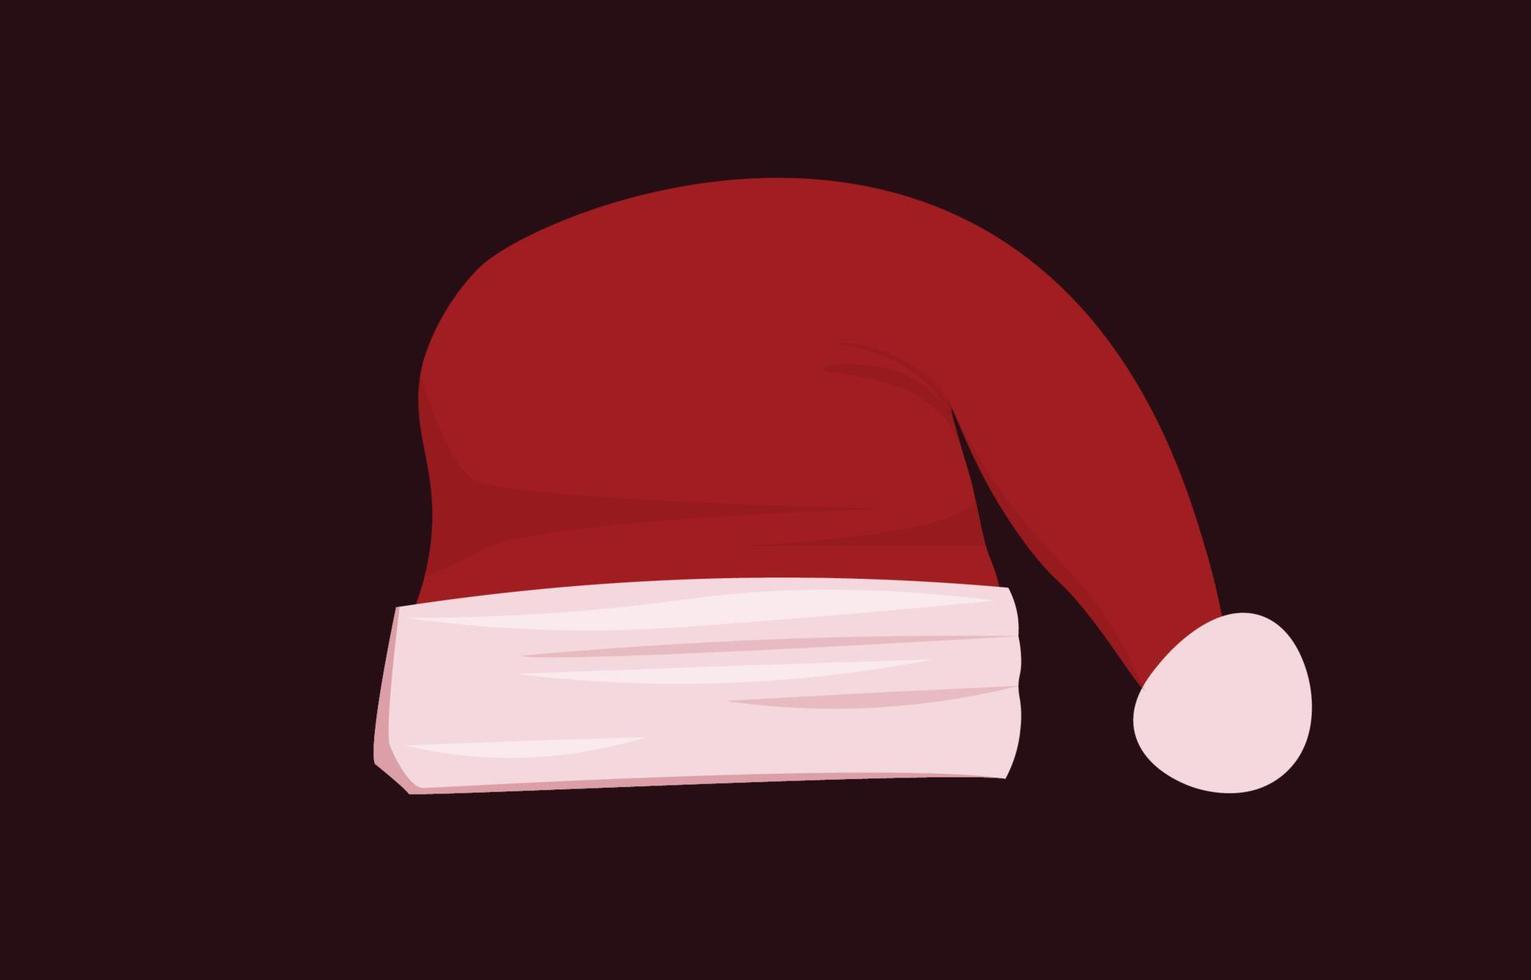 röd santa hatt med platt design. isolerat på en mörk bakgrund. begrepp vektor illustration i de jul säsong. använda sig av den till dekorera kort eller design evenemang i de ny år.